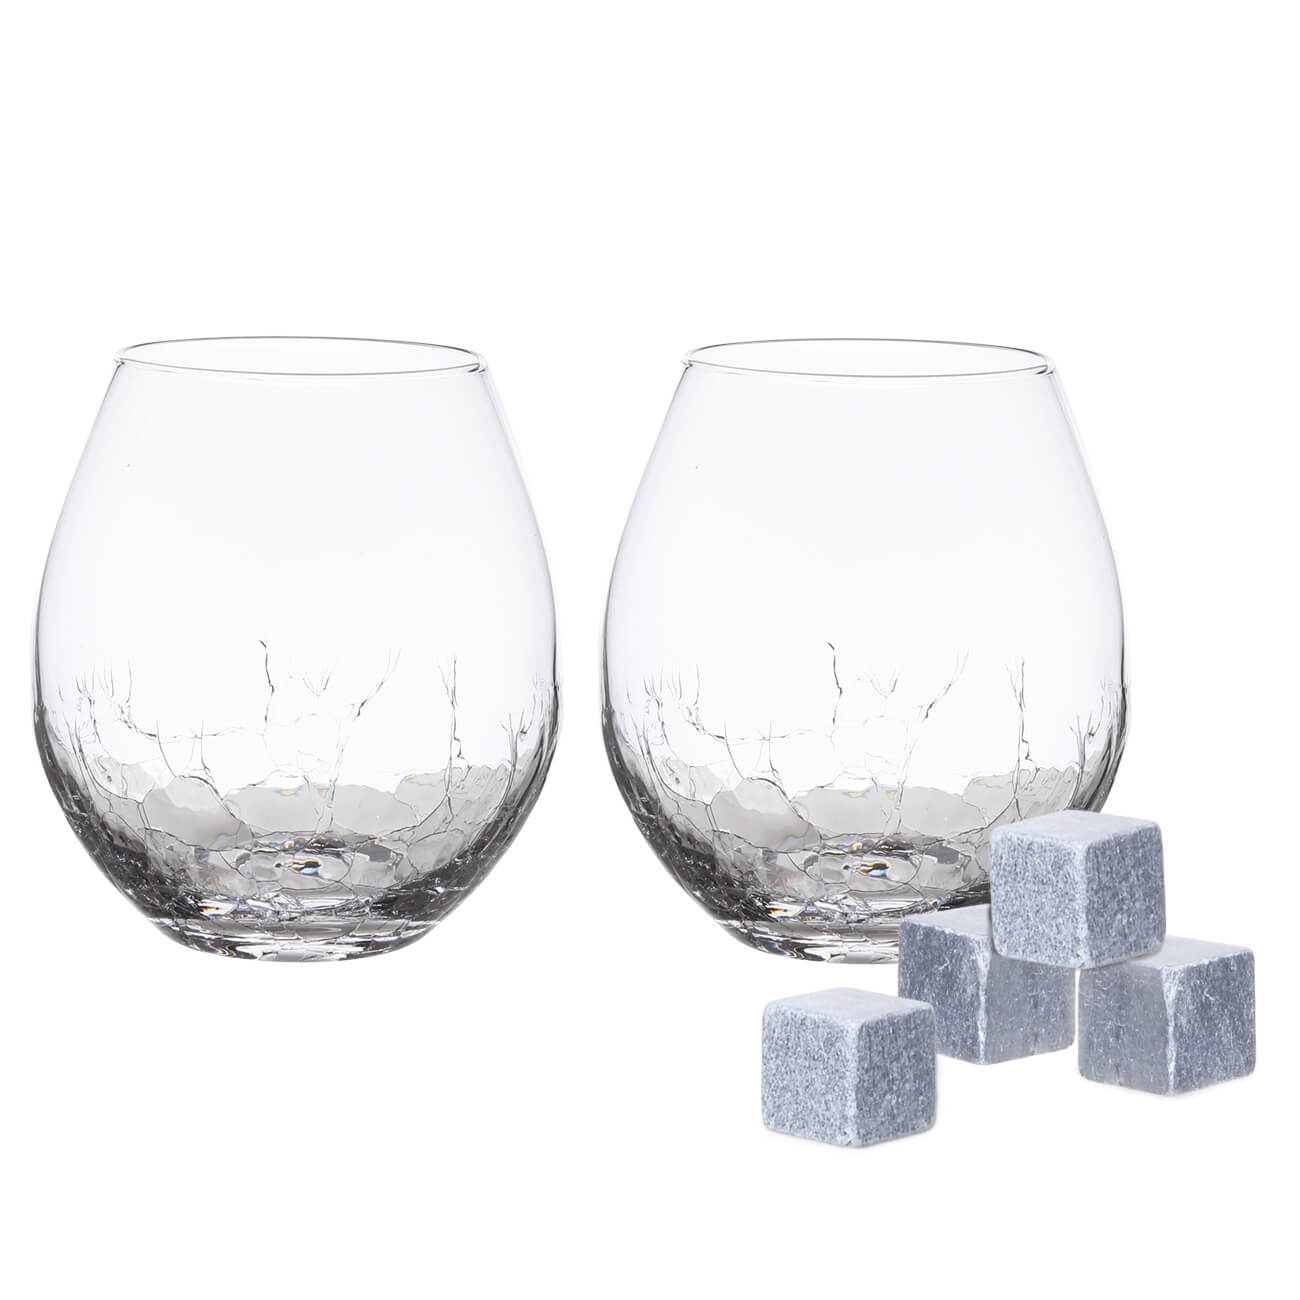 Набор для виски, 2 перс, 6 пр, стаканы/кубики, стекло/стеатит, Кракелюр, Ice набор для виски 1 перс 5 пр в коробке стакан кубики подставка стекло мрамор сланец bar